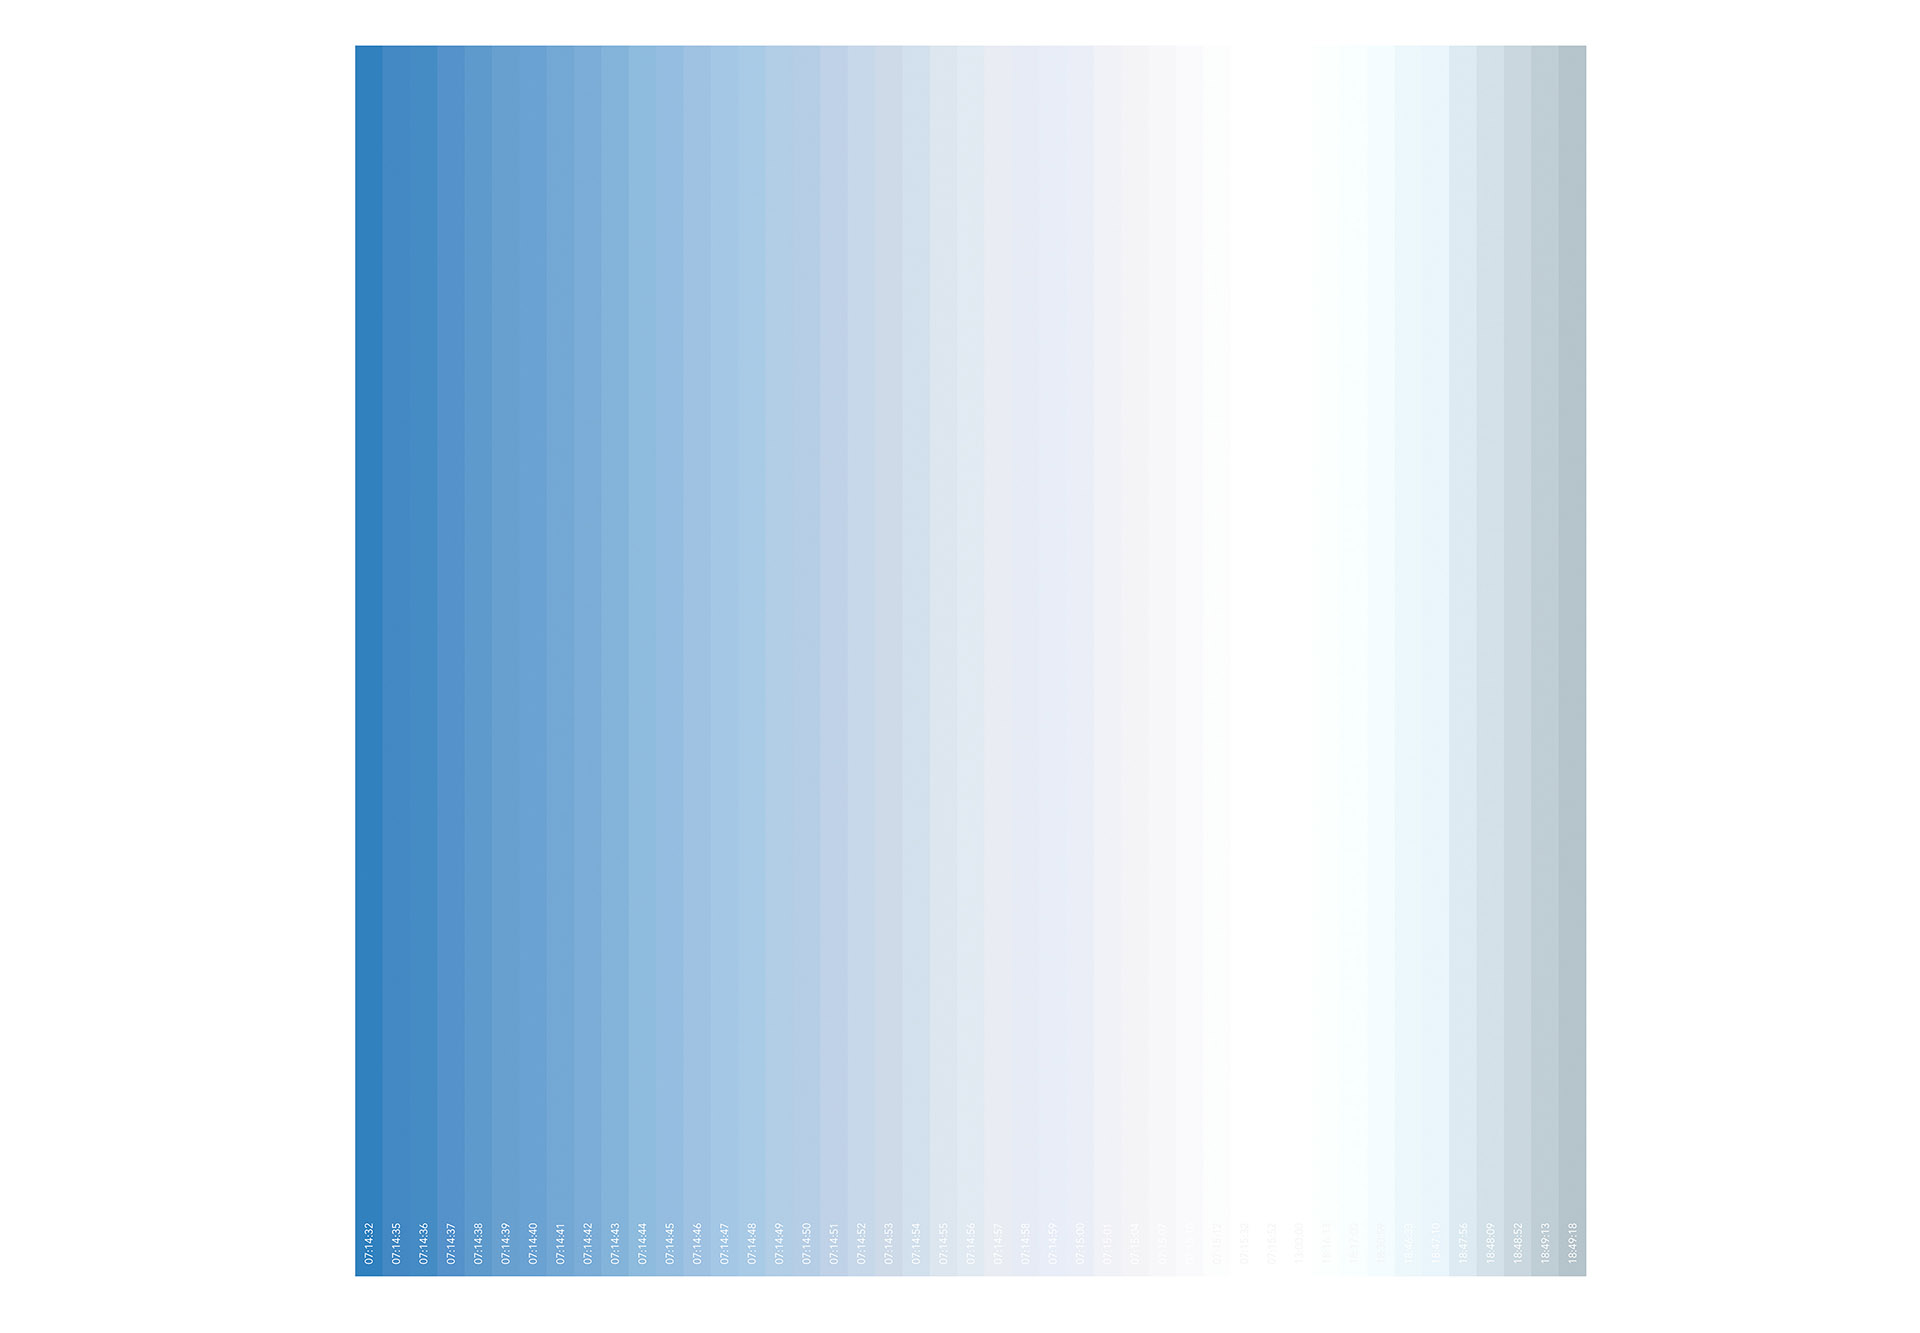 blau, unendlich 2018/31 - 28.07.2010 - 07:14:32 - 18:49:18, Giclée Druck auf Hahnemühle Photo Gloss 260g, auf Aluminium, Acrylglas, 1/12, 30 x 30 cm